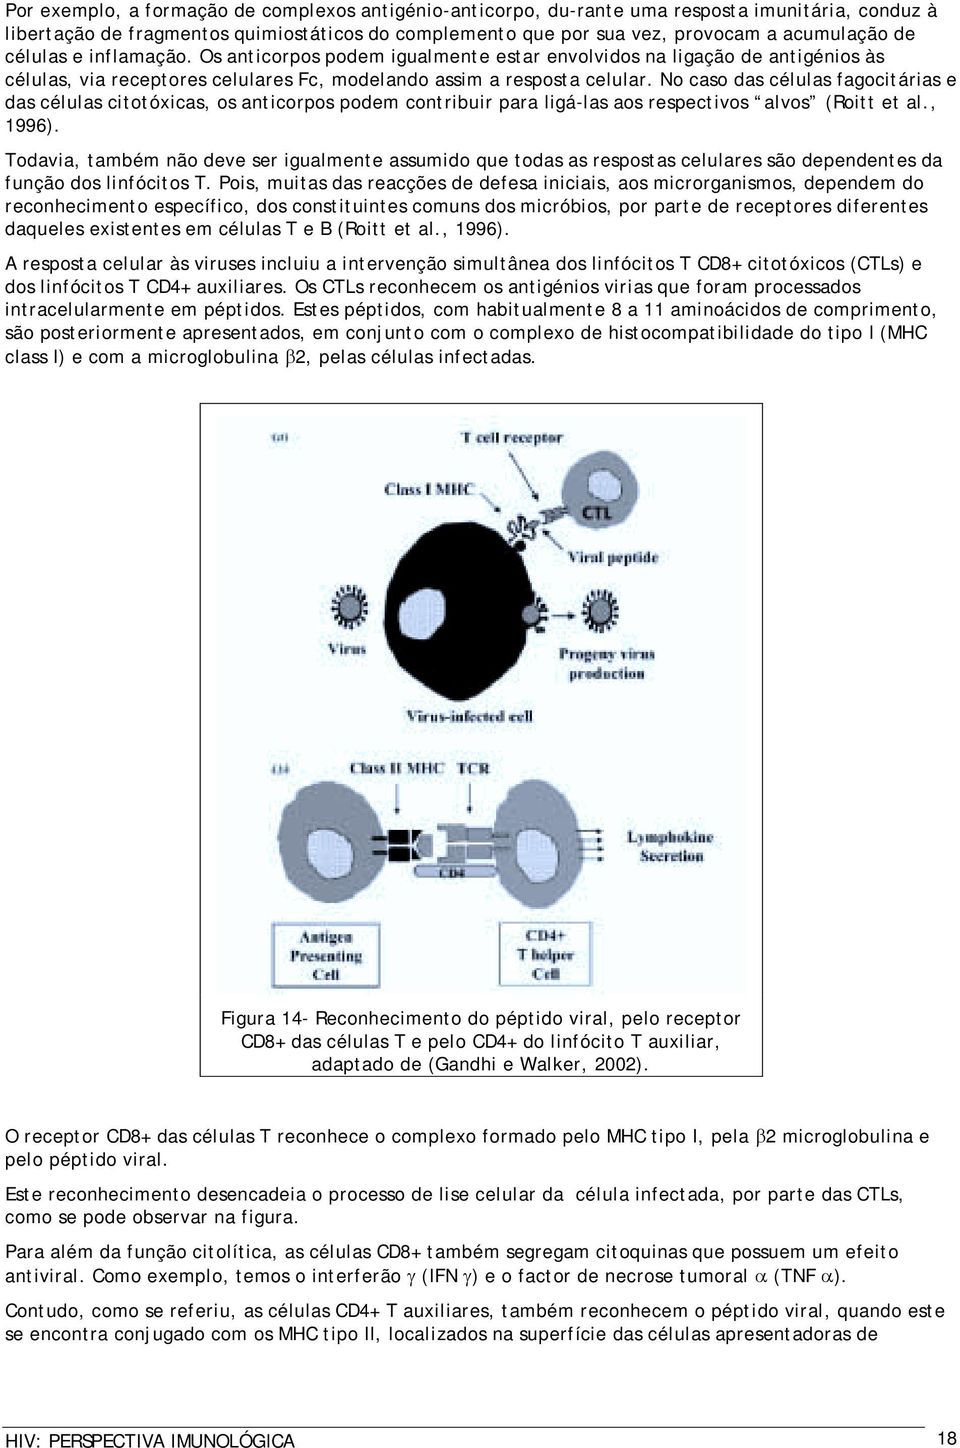 No caso das células fagocitárias e das células citotóxicas, os anticorpos podem contribuir para ligá-las aos respectivos alvos (Roitt et al., 1996).